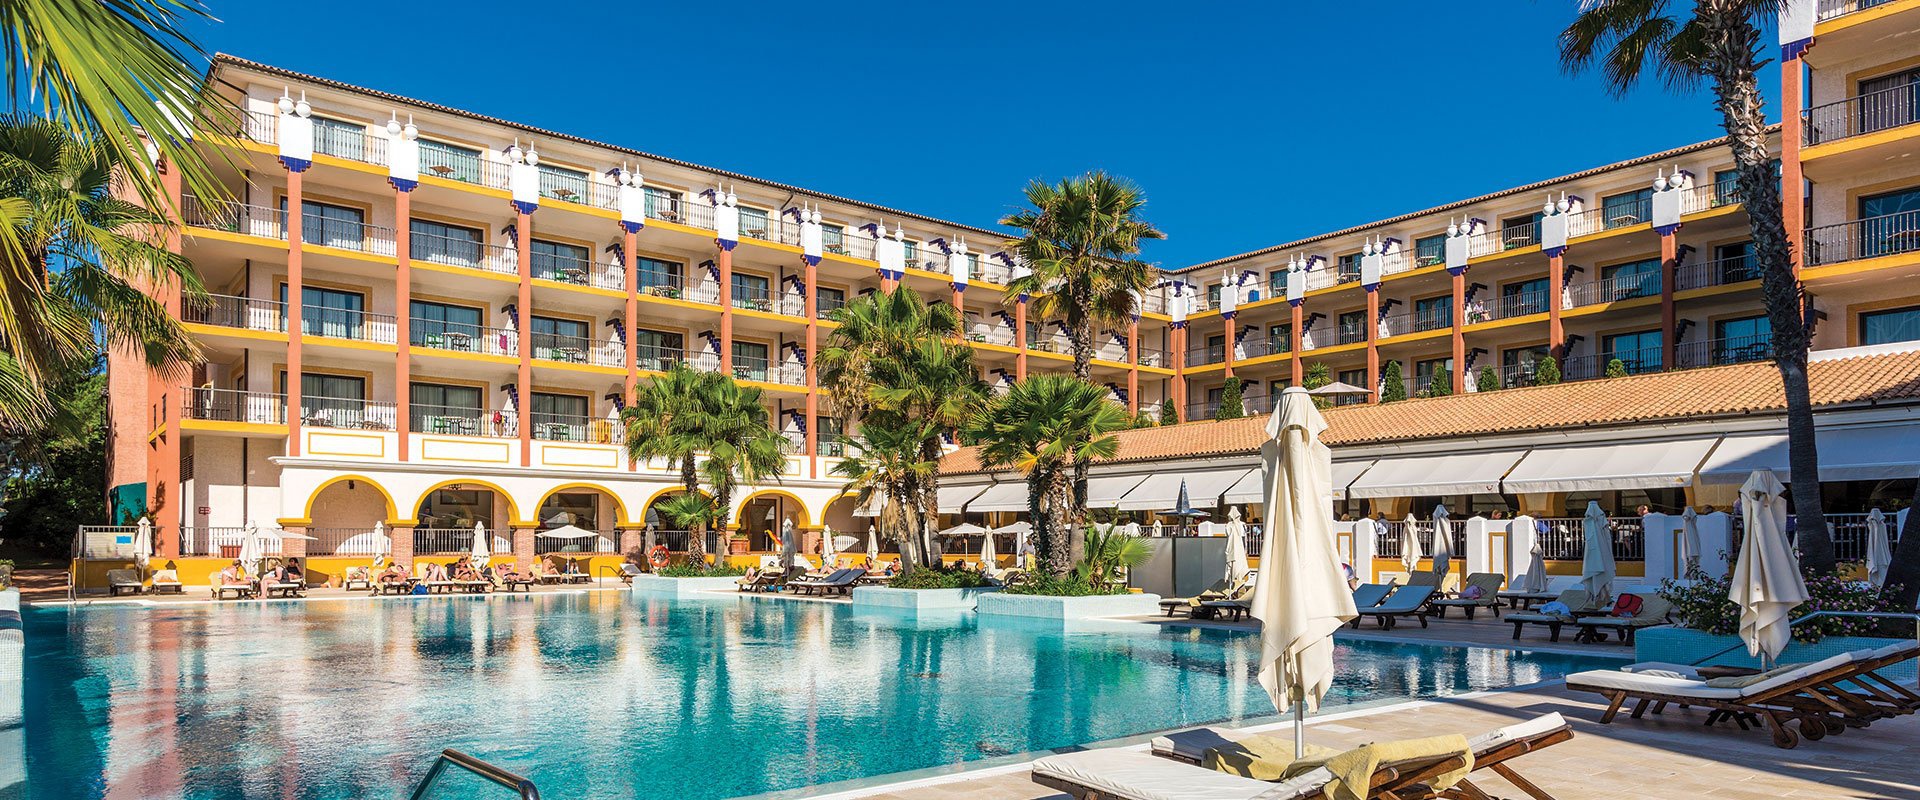 Quality services at your disposal! TUI BLUE ISLA CRISTINA PALACE Hotel Isla Cristina, Huelva, Spain